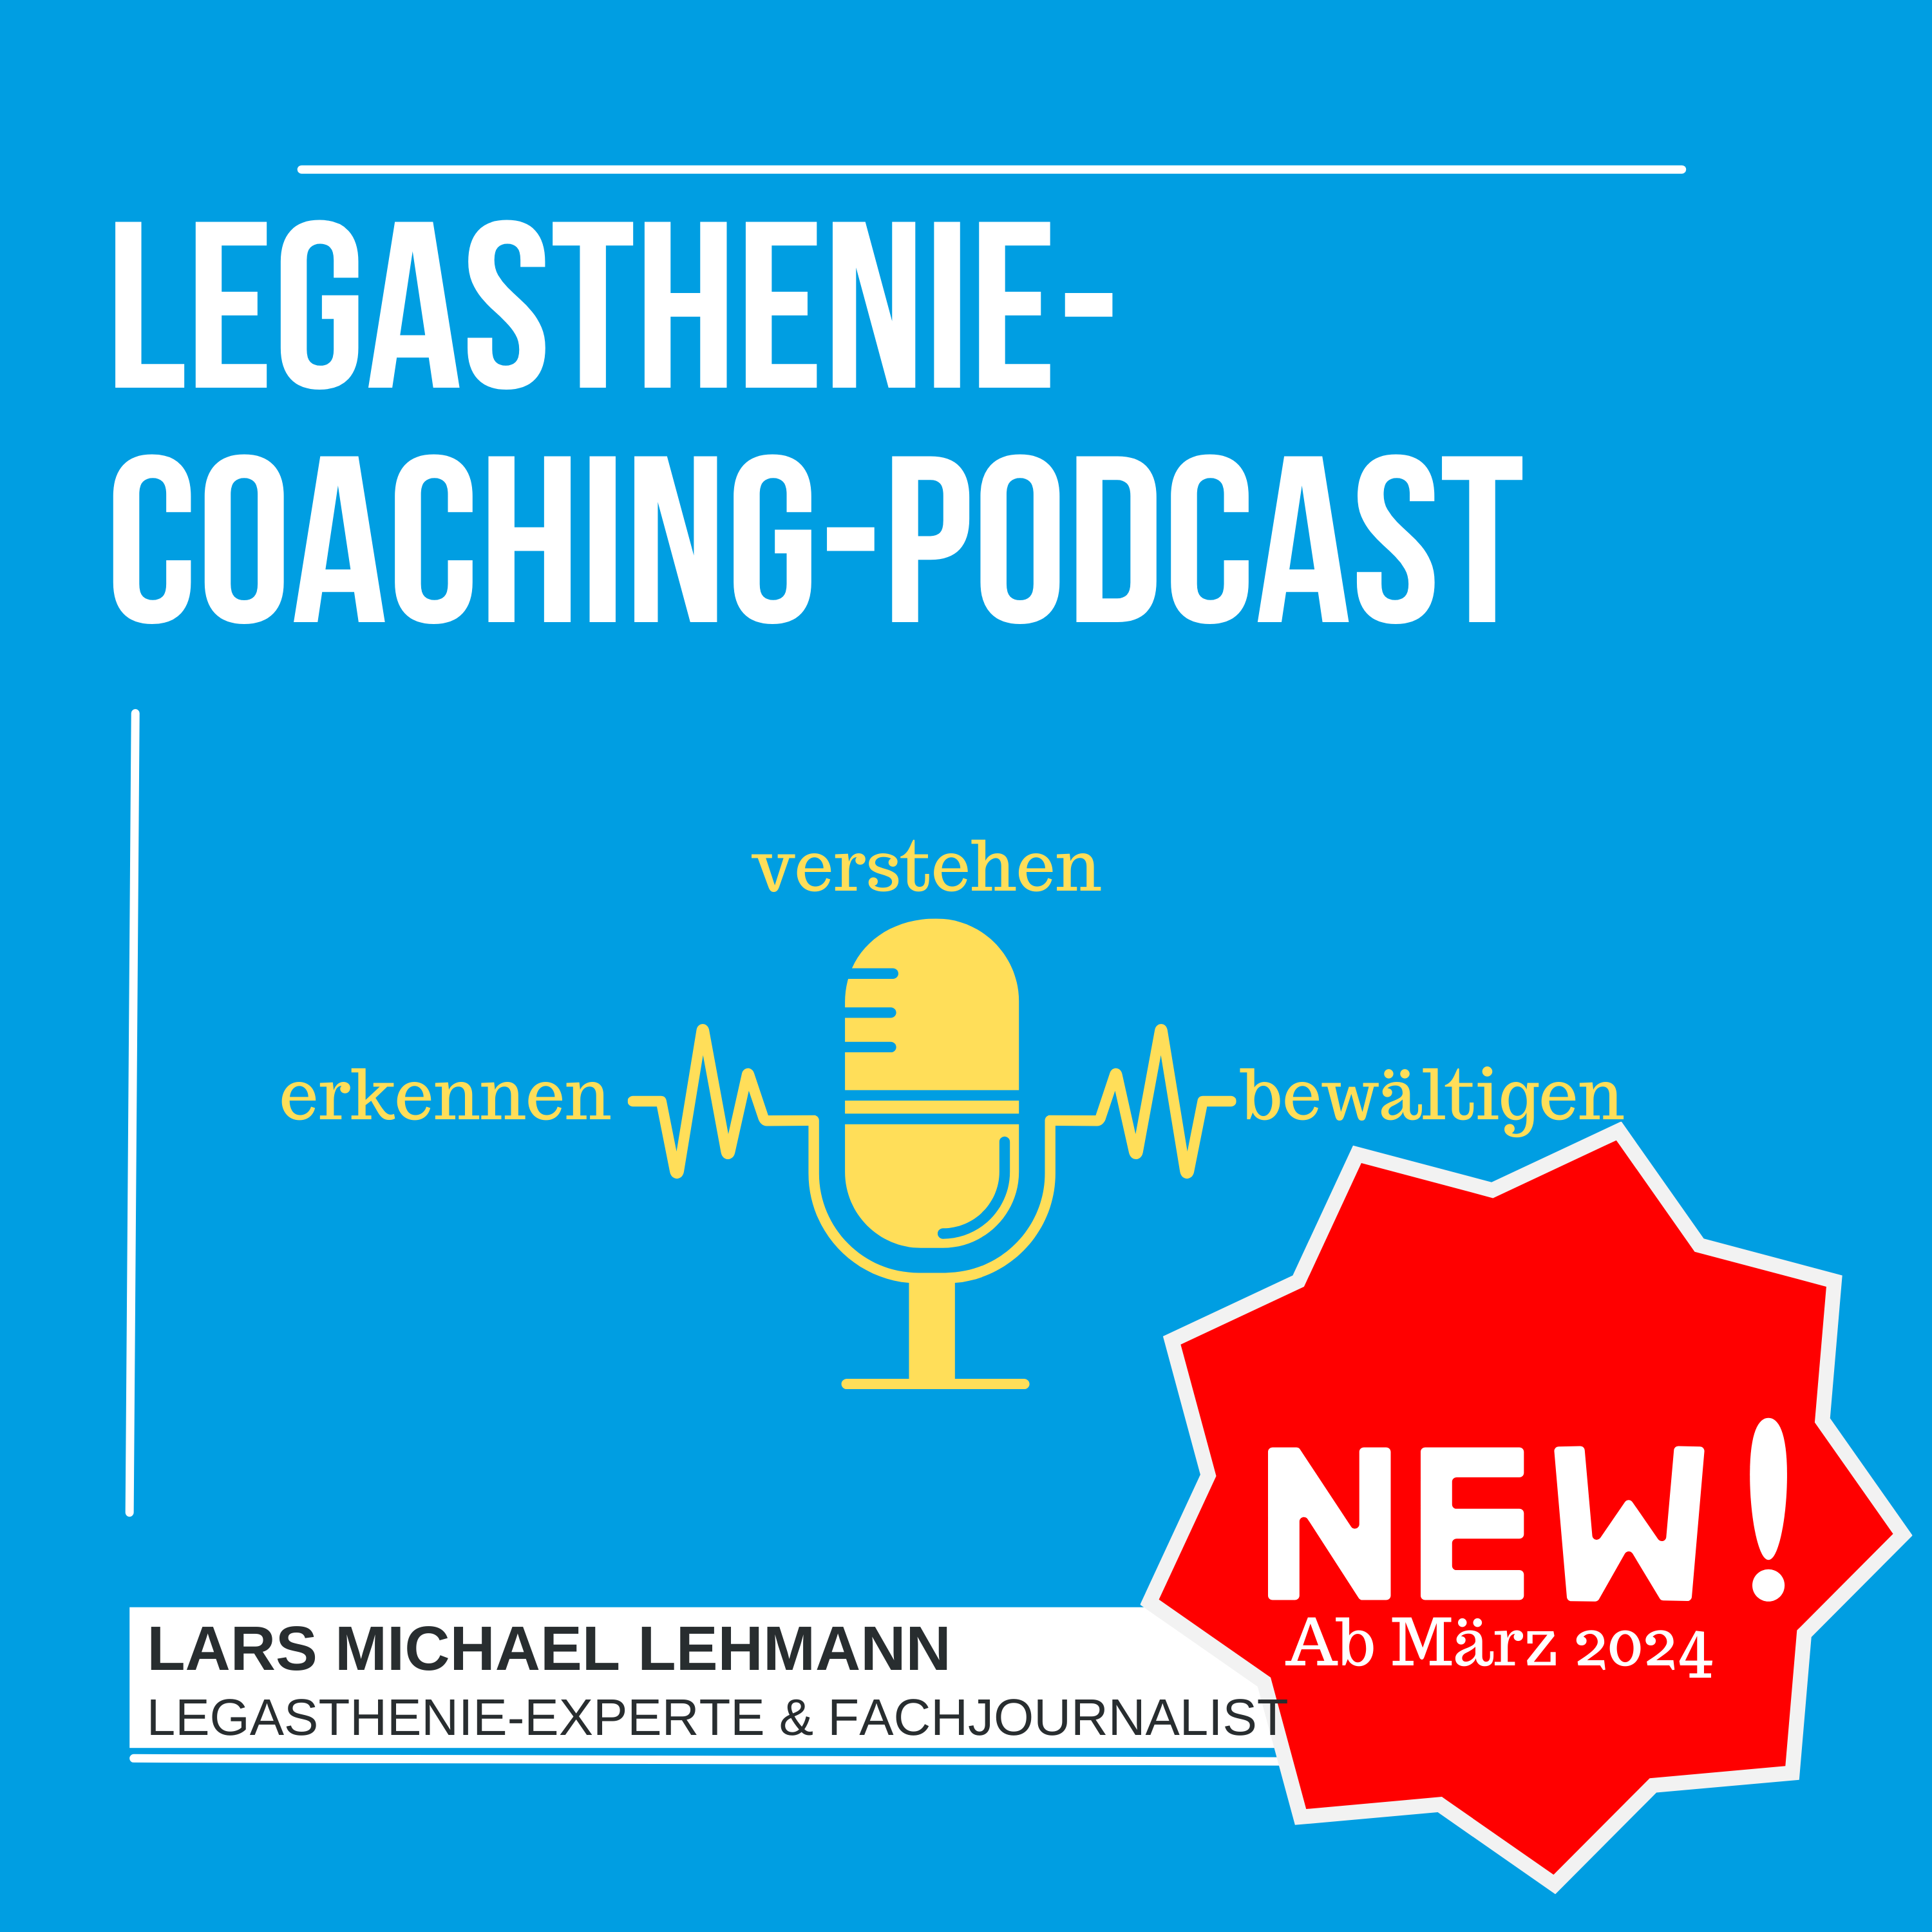 Pressmitteilung: Neuer „Legasthenie-Coaching-Podcast“ – erkennen, verstehen, bewältigen